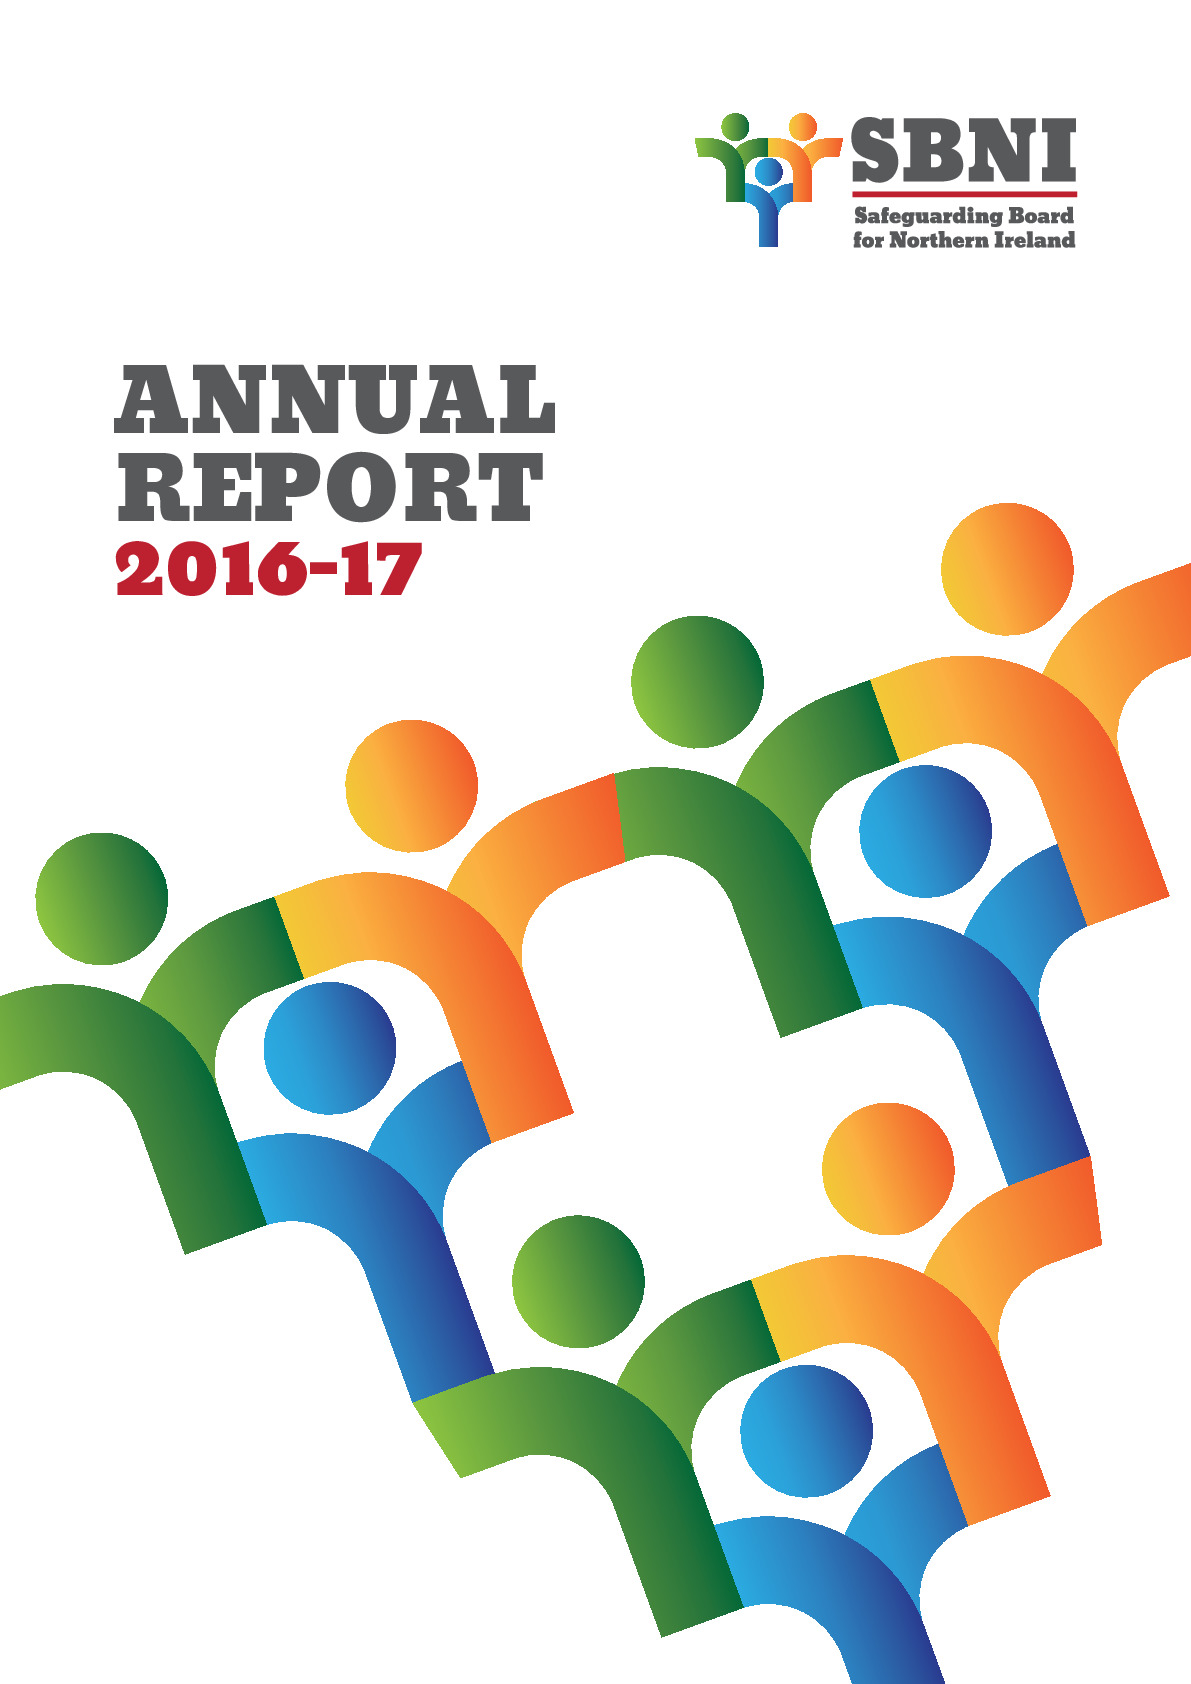 09.06.17-Annual Report 2016-17 SBNI